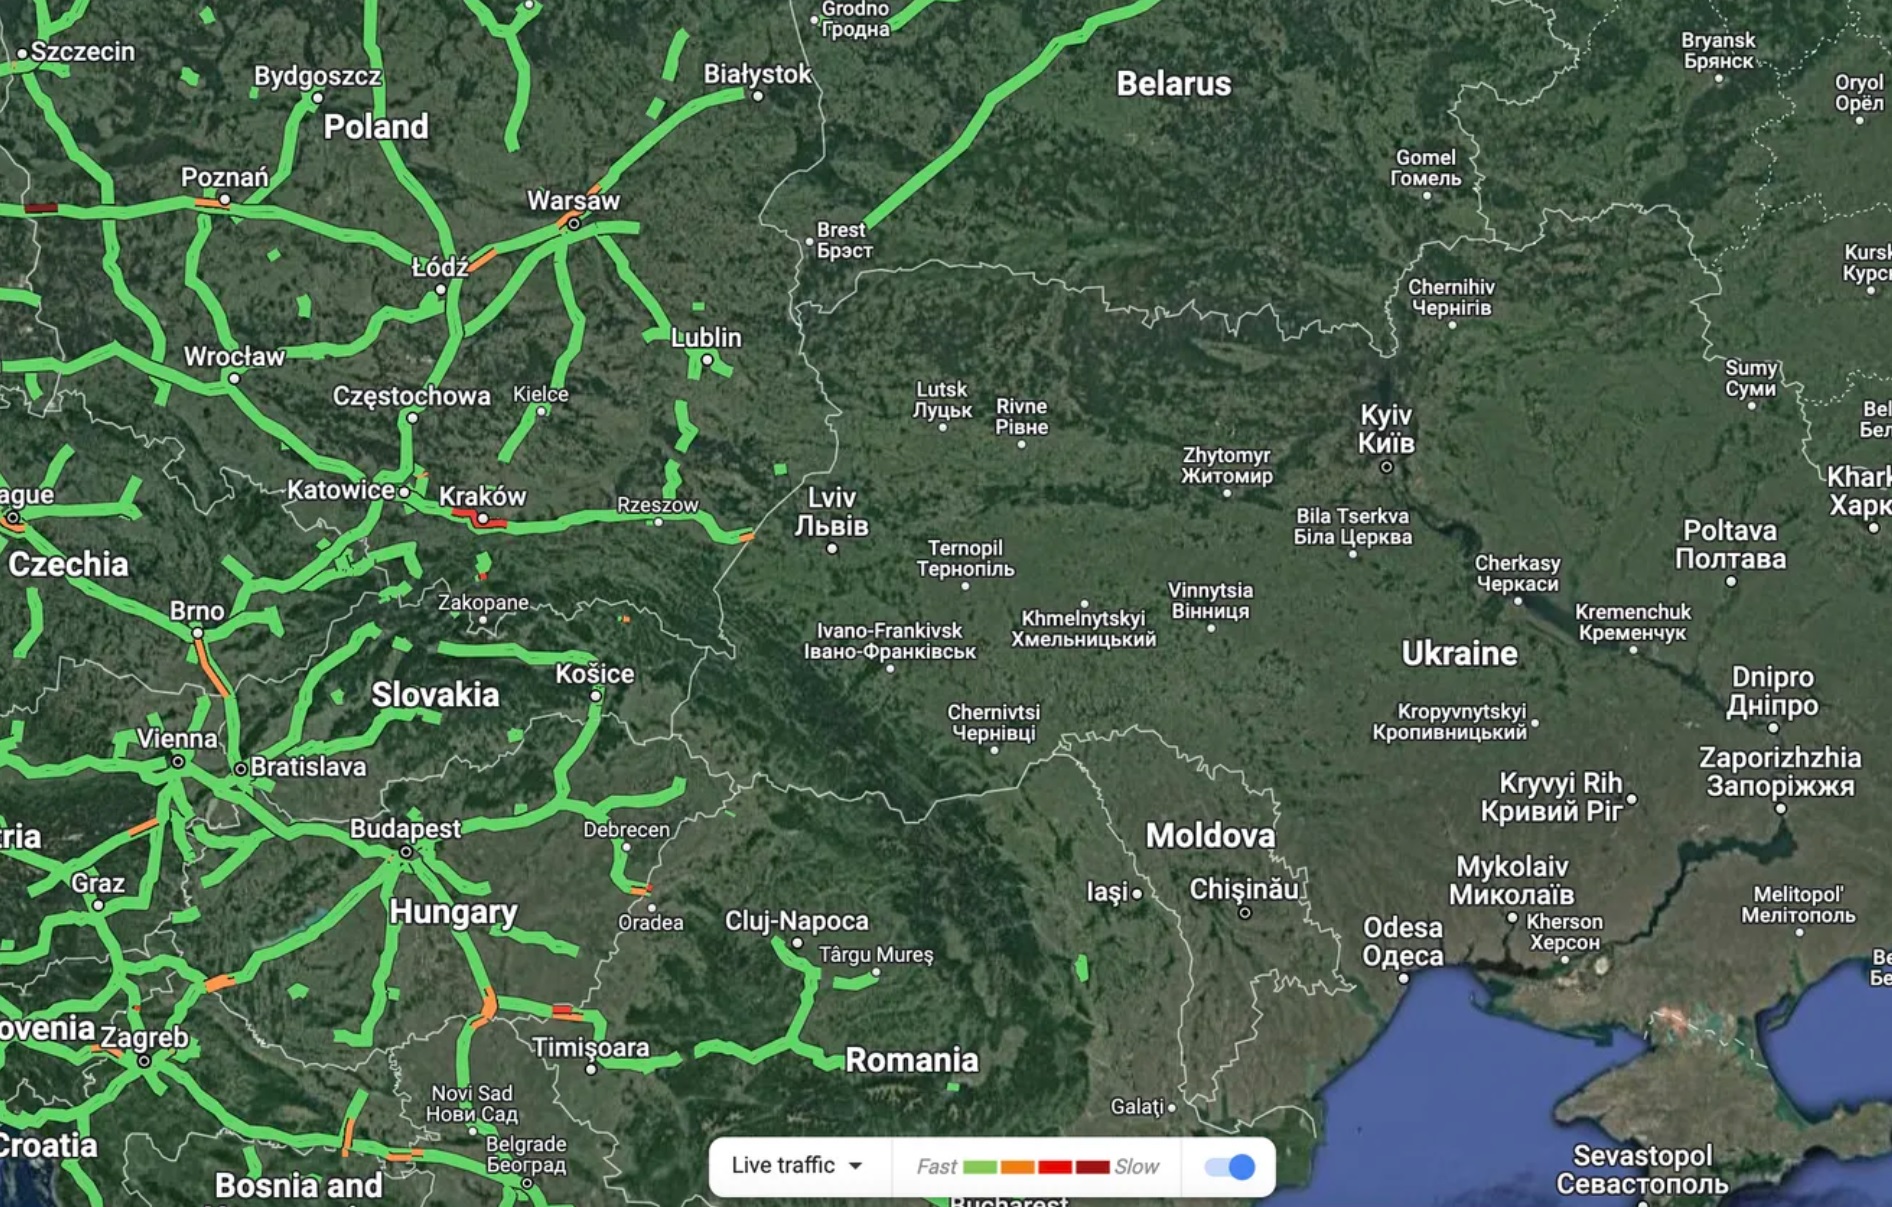 Google a dezactivat temporar funcția de trafic live pe Google Maps pentru a proteja Ucraina